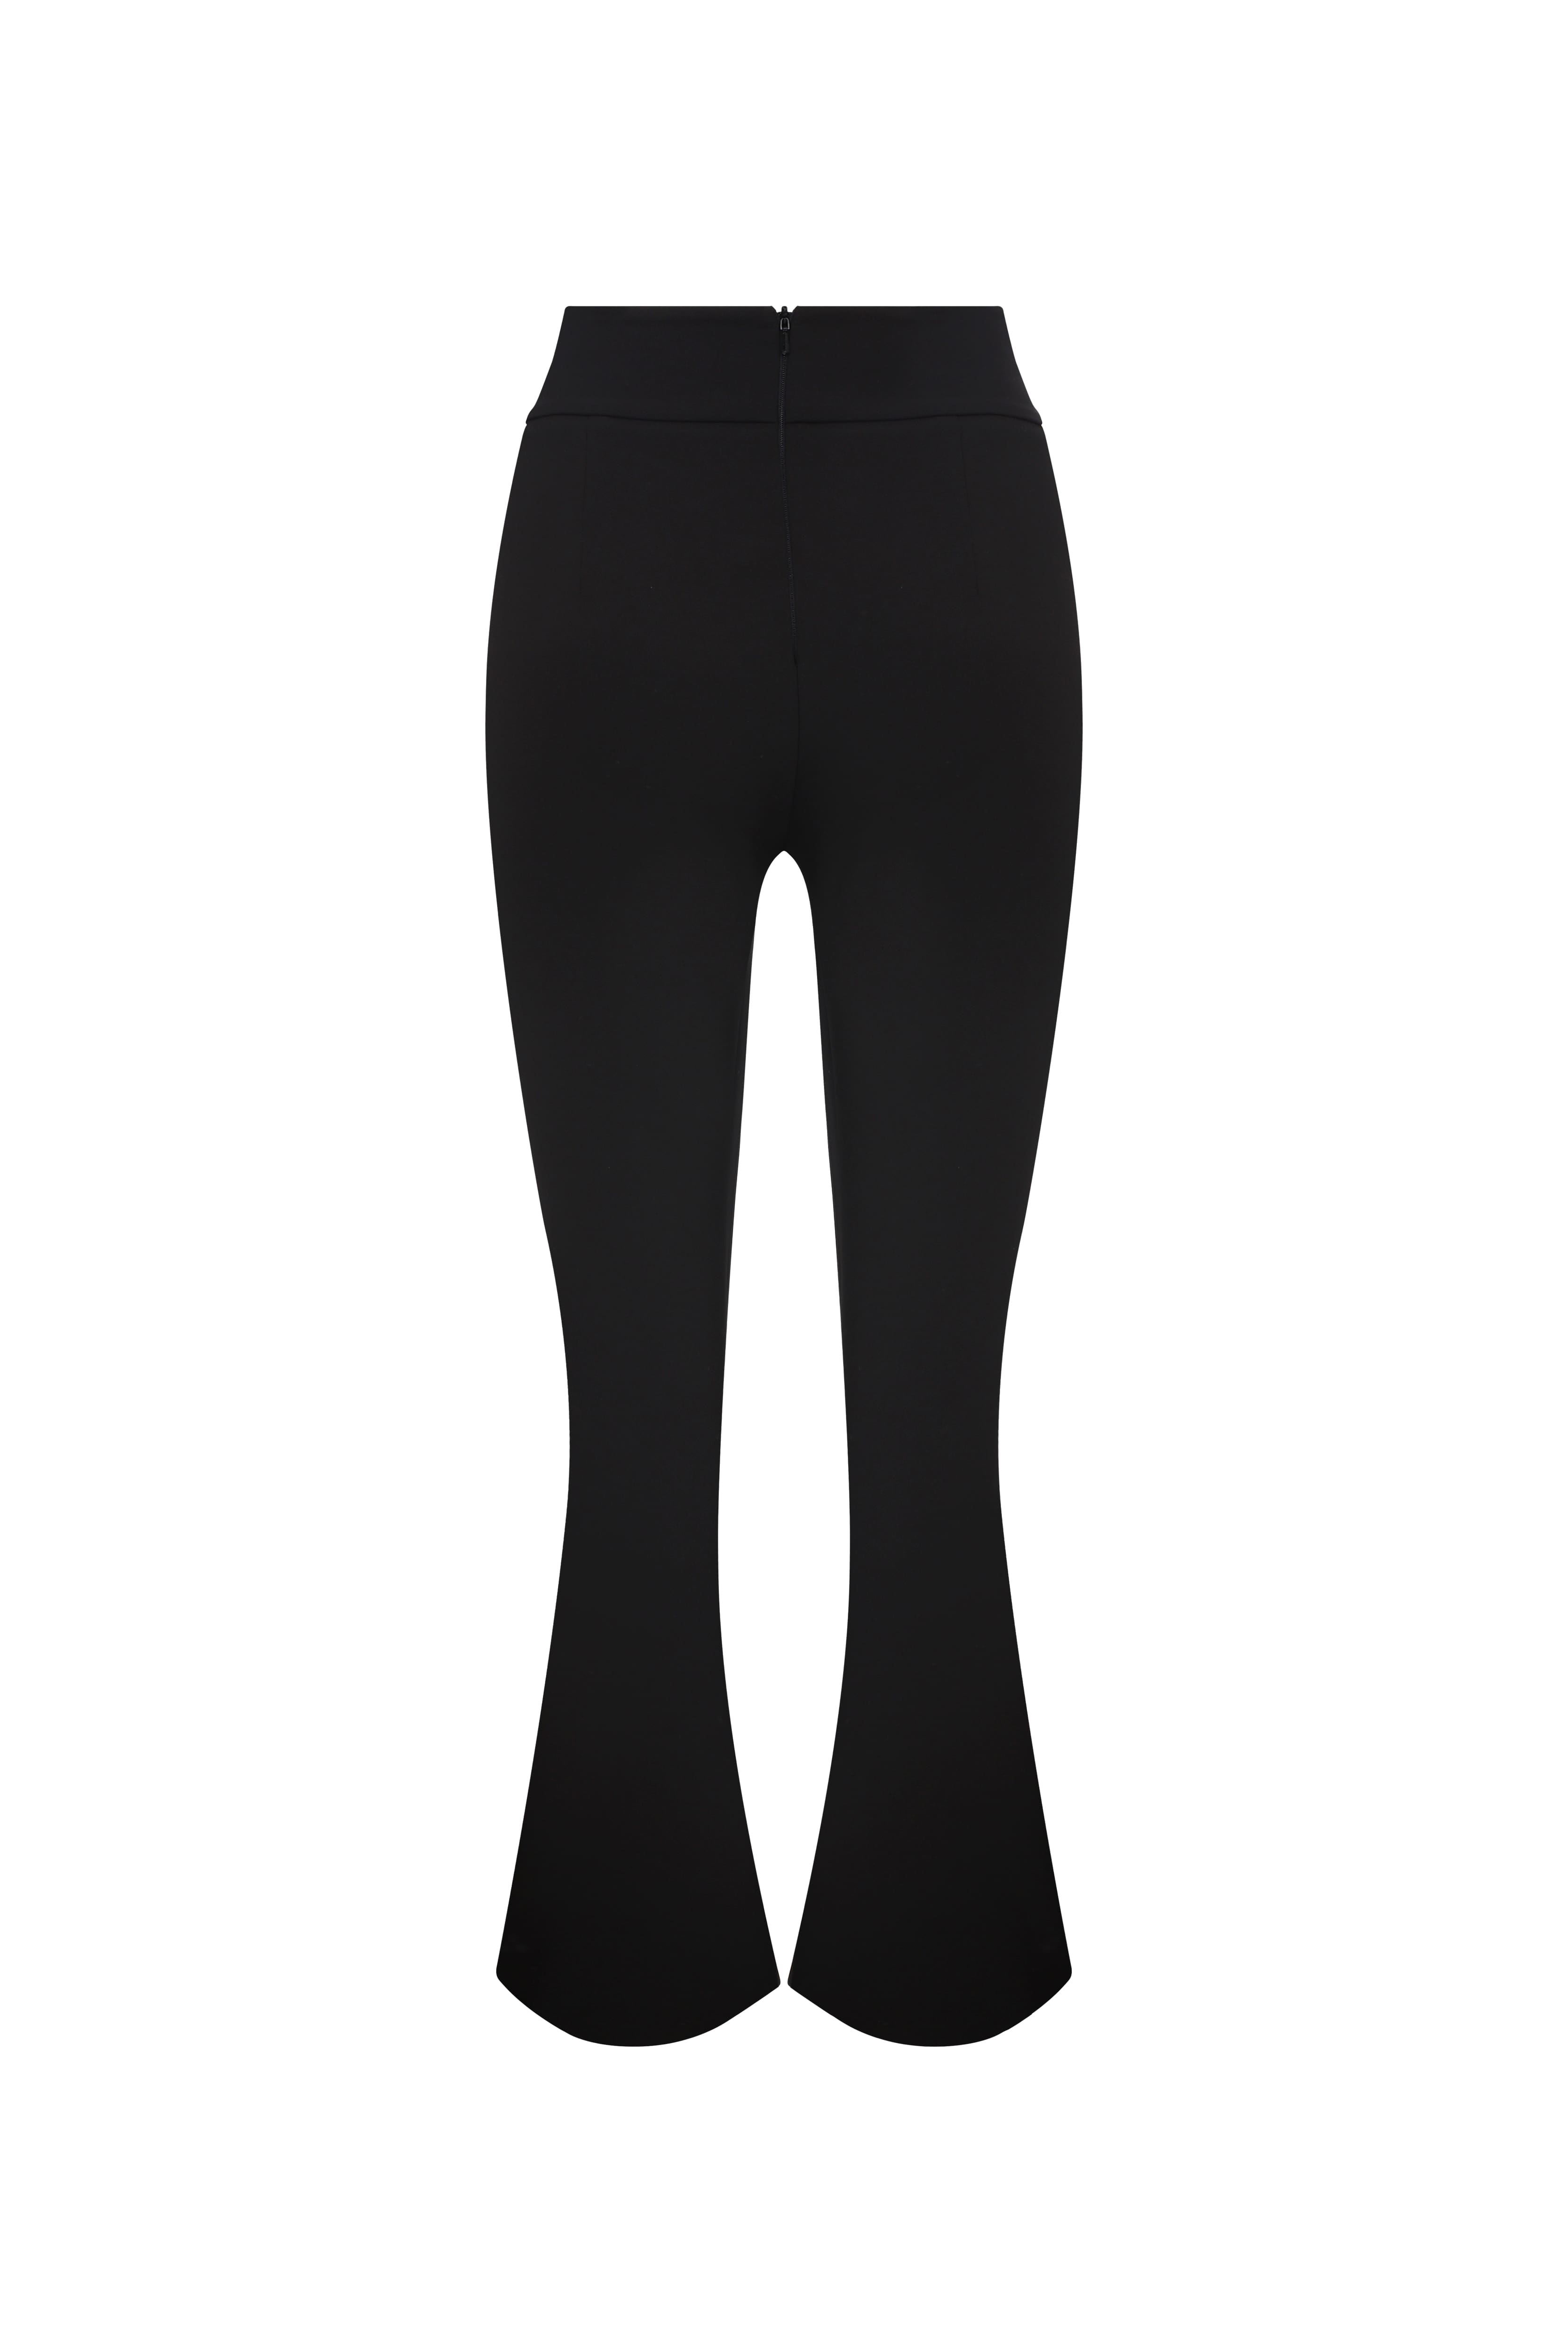 Belt Detailed Slit Leg Black Women's Pants --[BLACK]